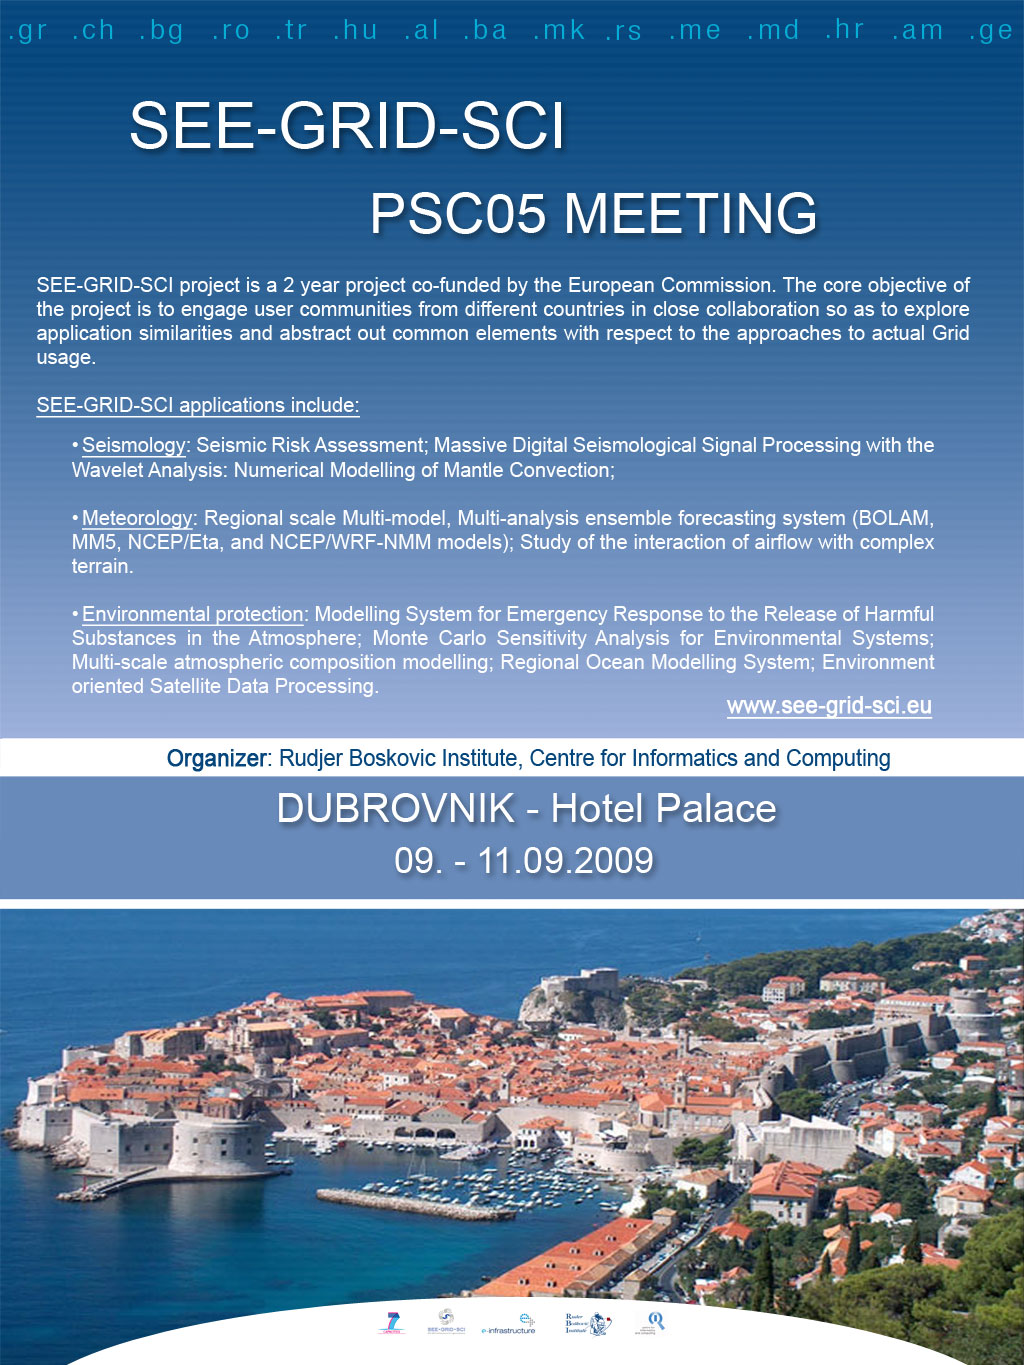 Skup o grid infrastrukturi i virtualnim organizacijama u Dubrovniku